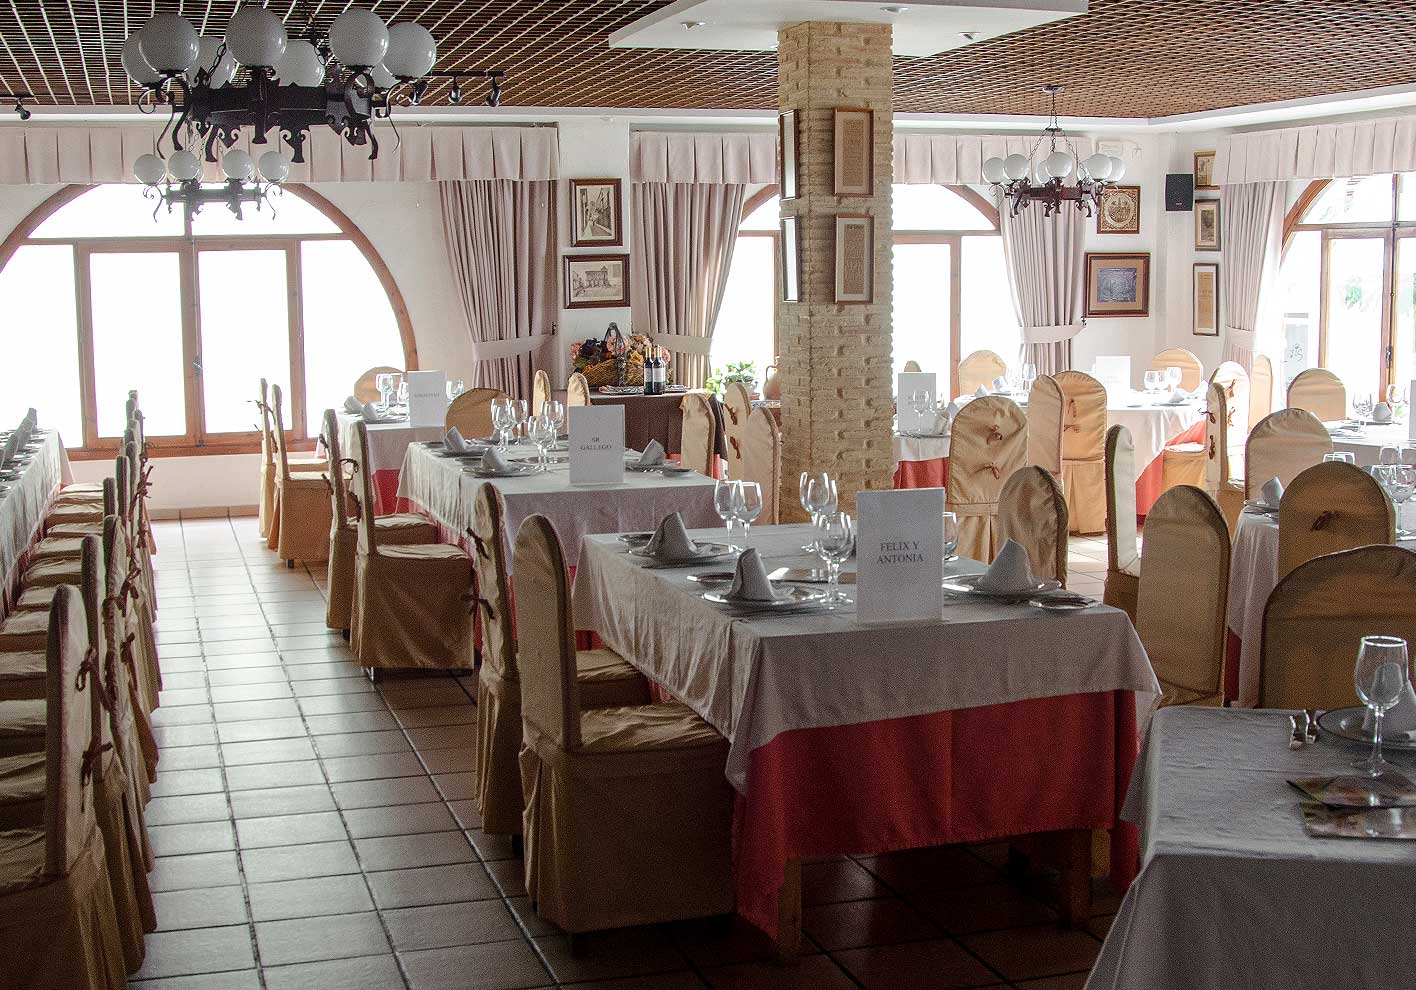 Private Dining Room 05 - Hotel Restaurante Terraza Carmona in Vera, Almeria